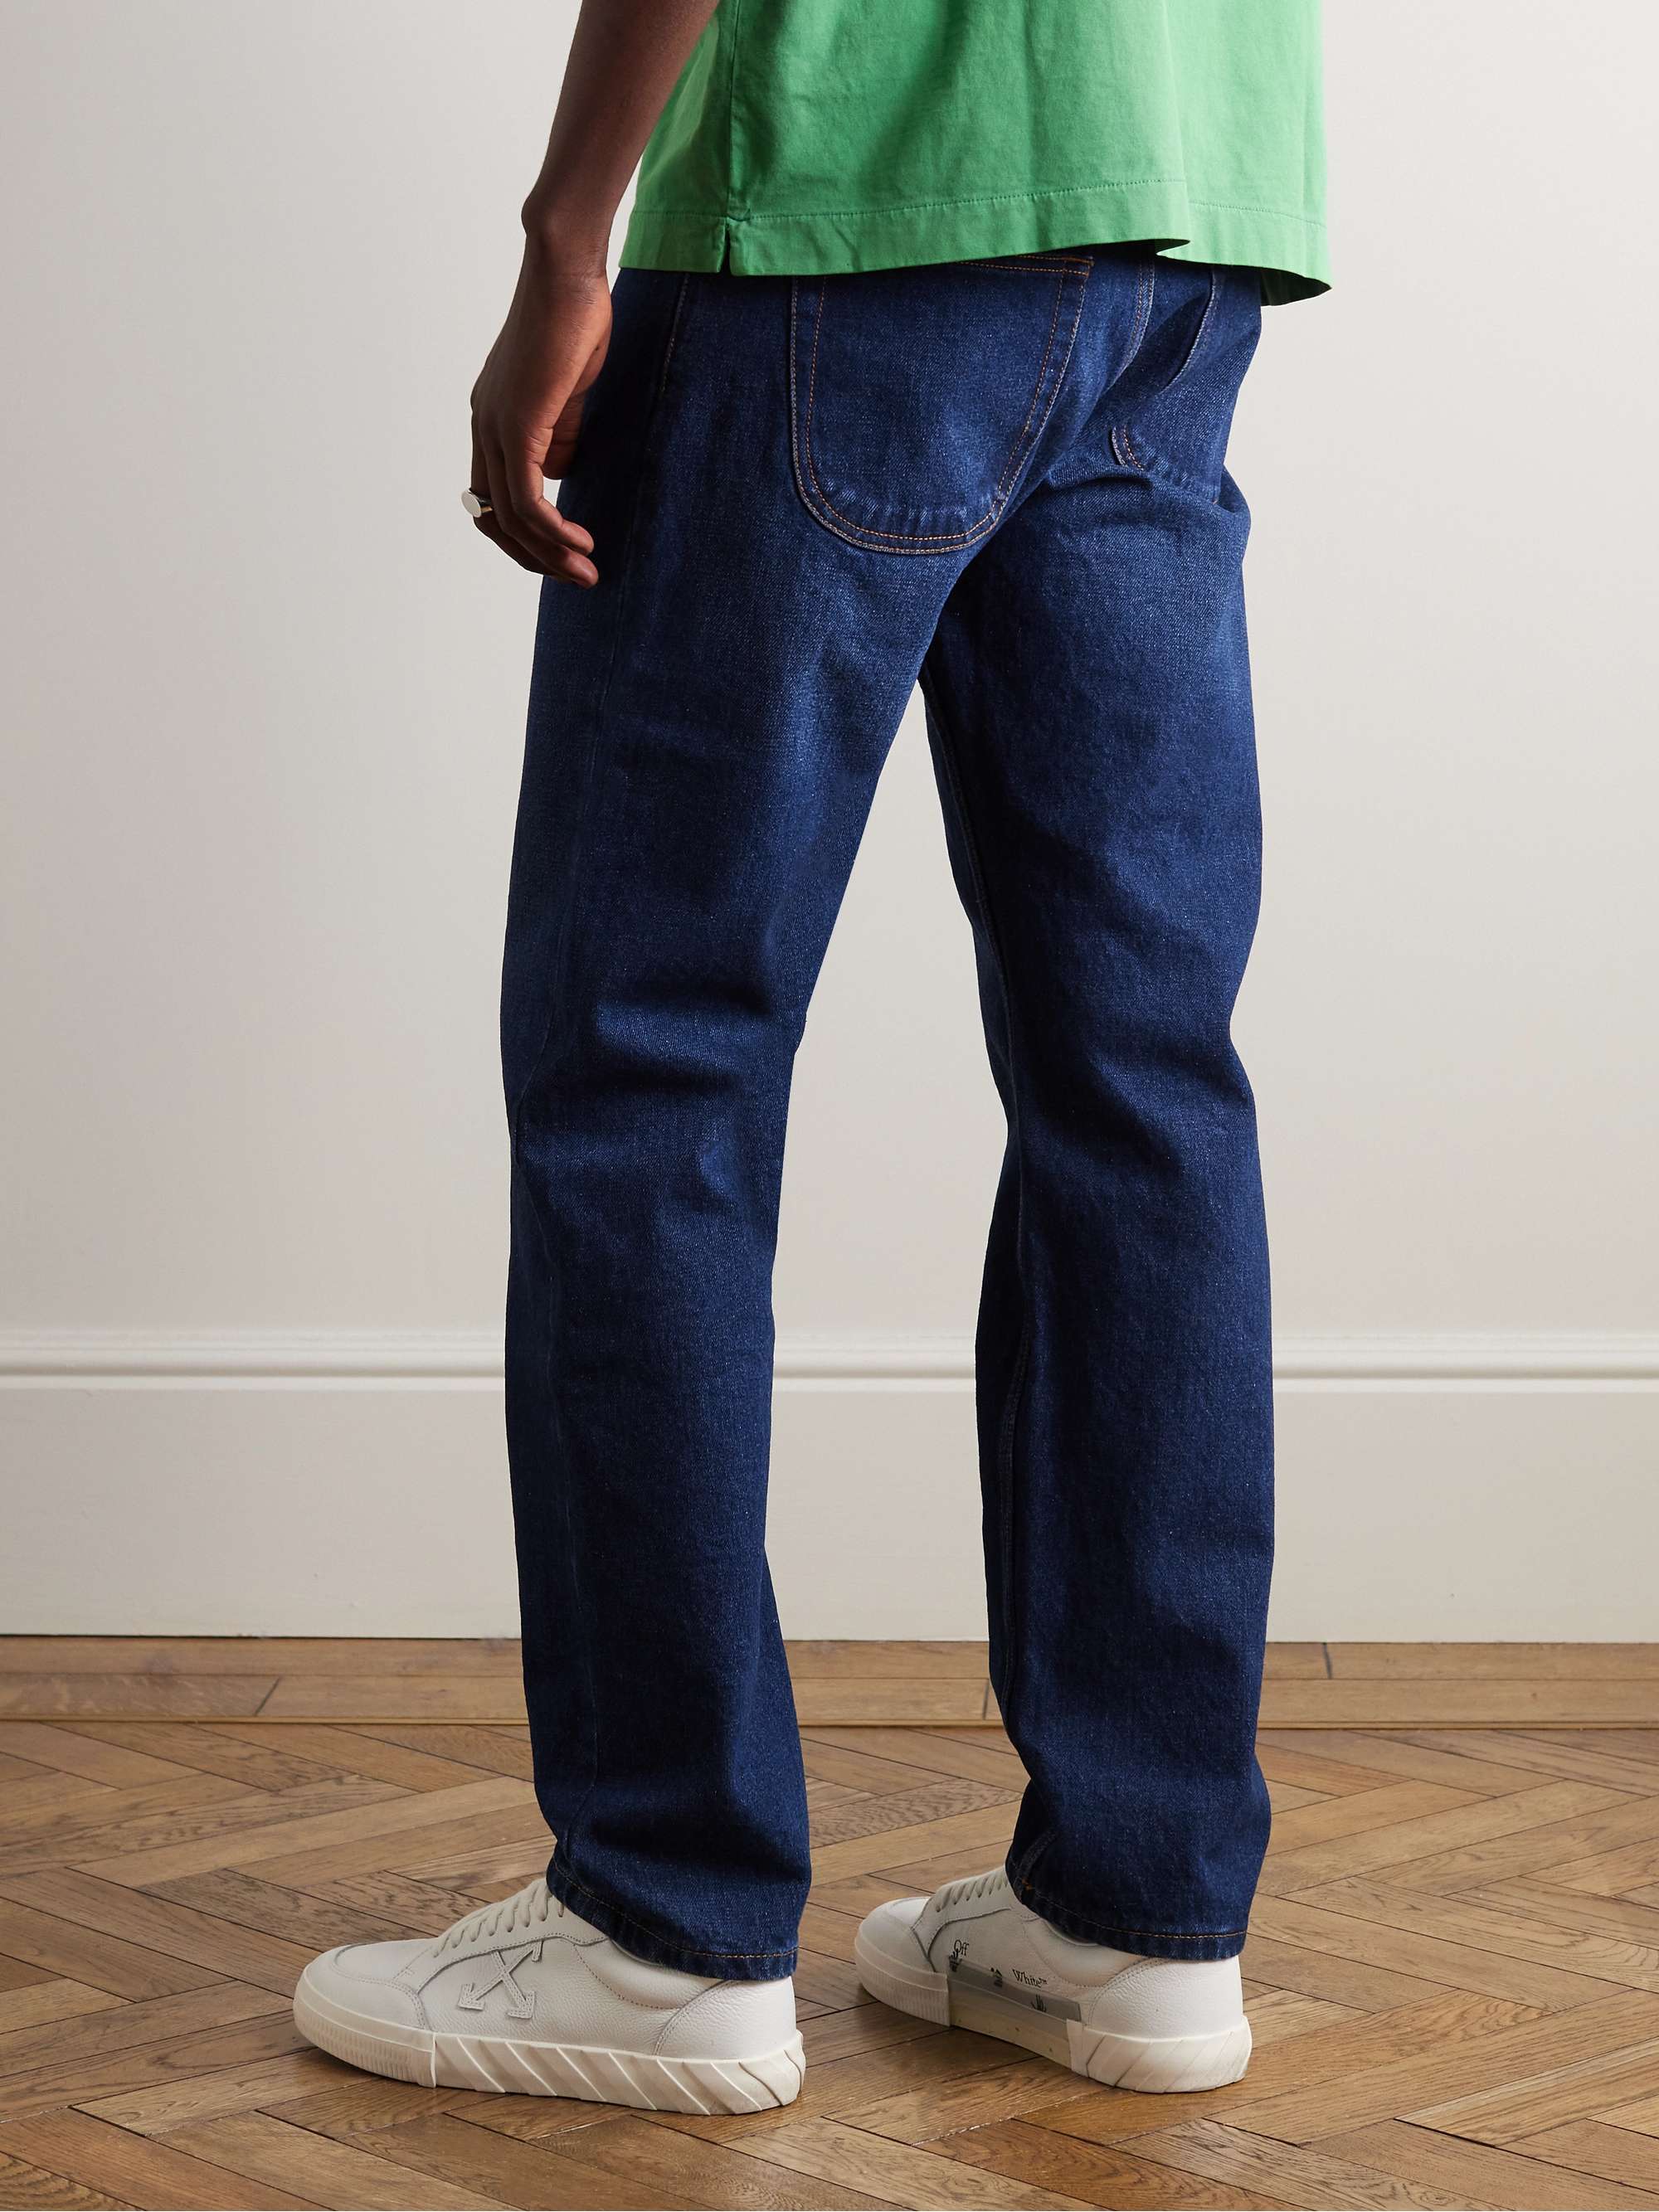 OFF-WHITE Straight-Leg Jeans for Men | MR PORTER